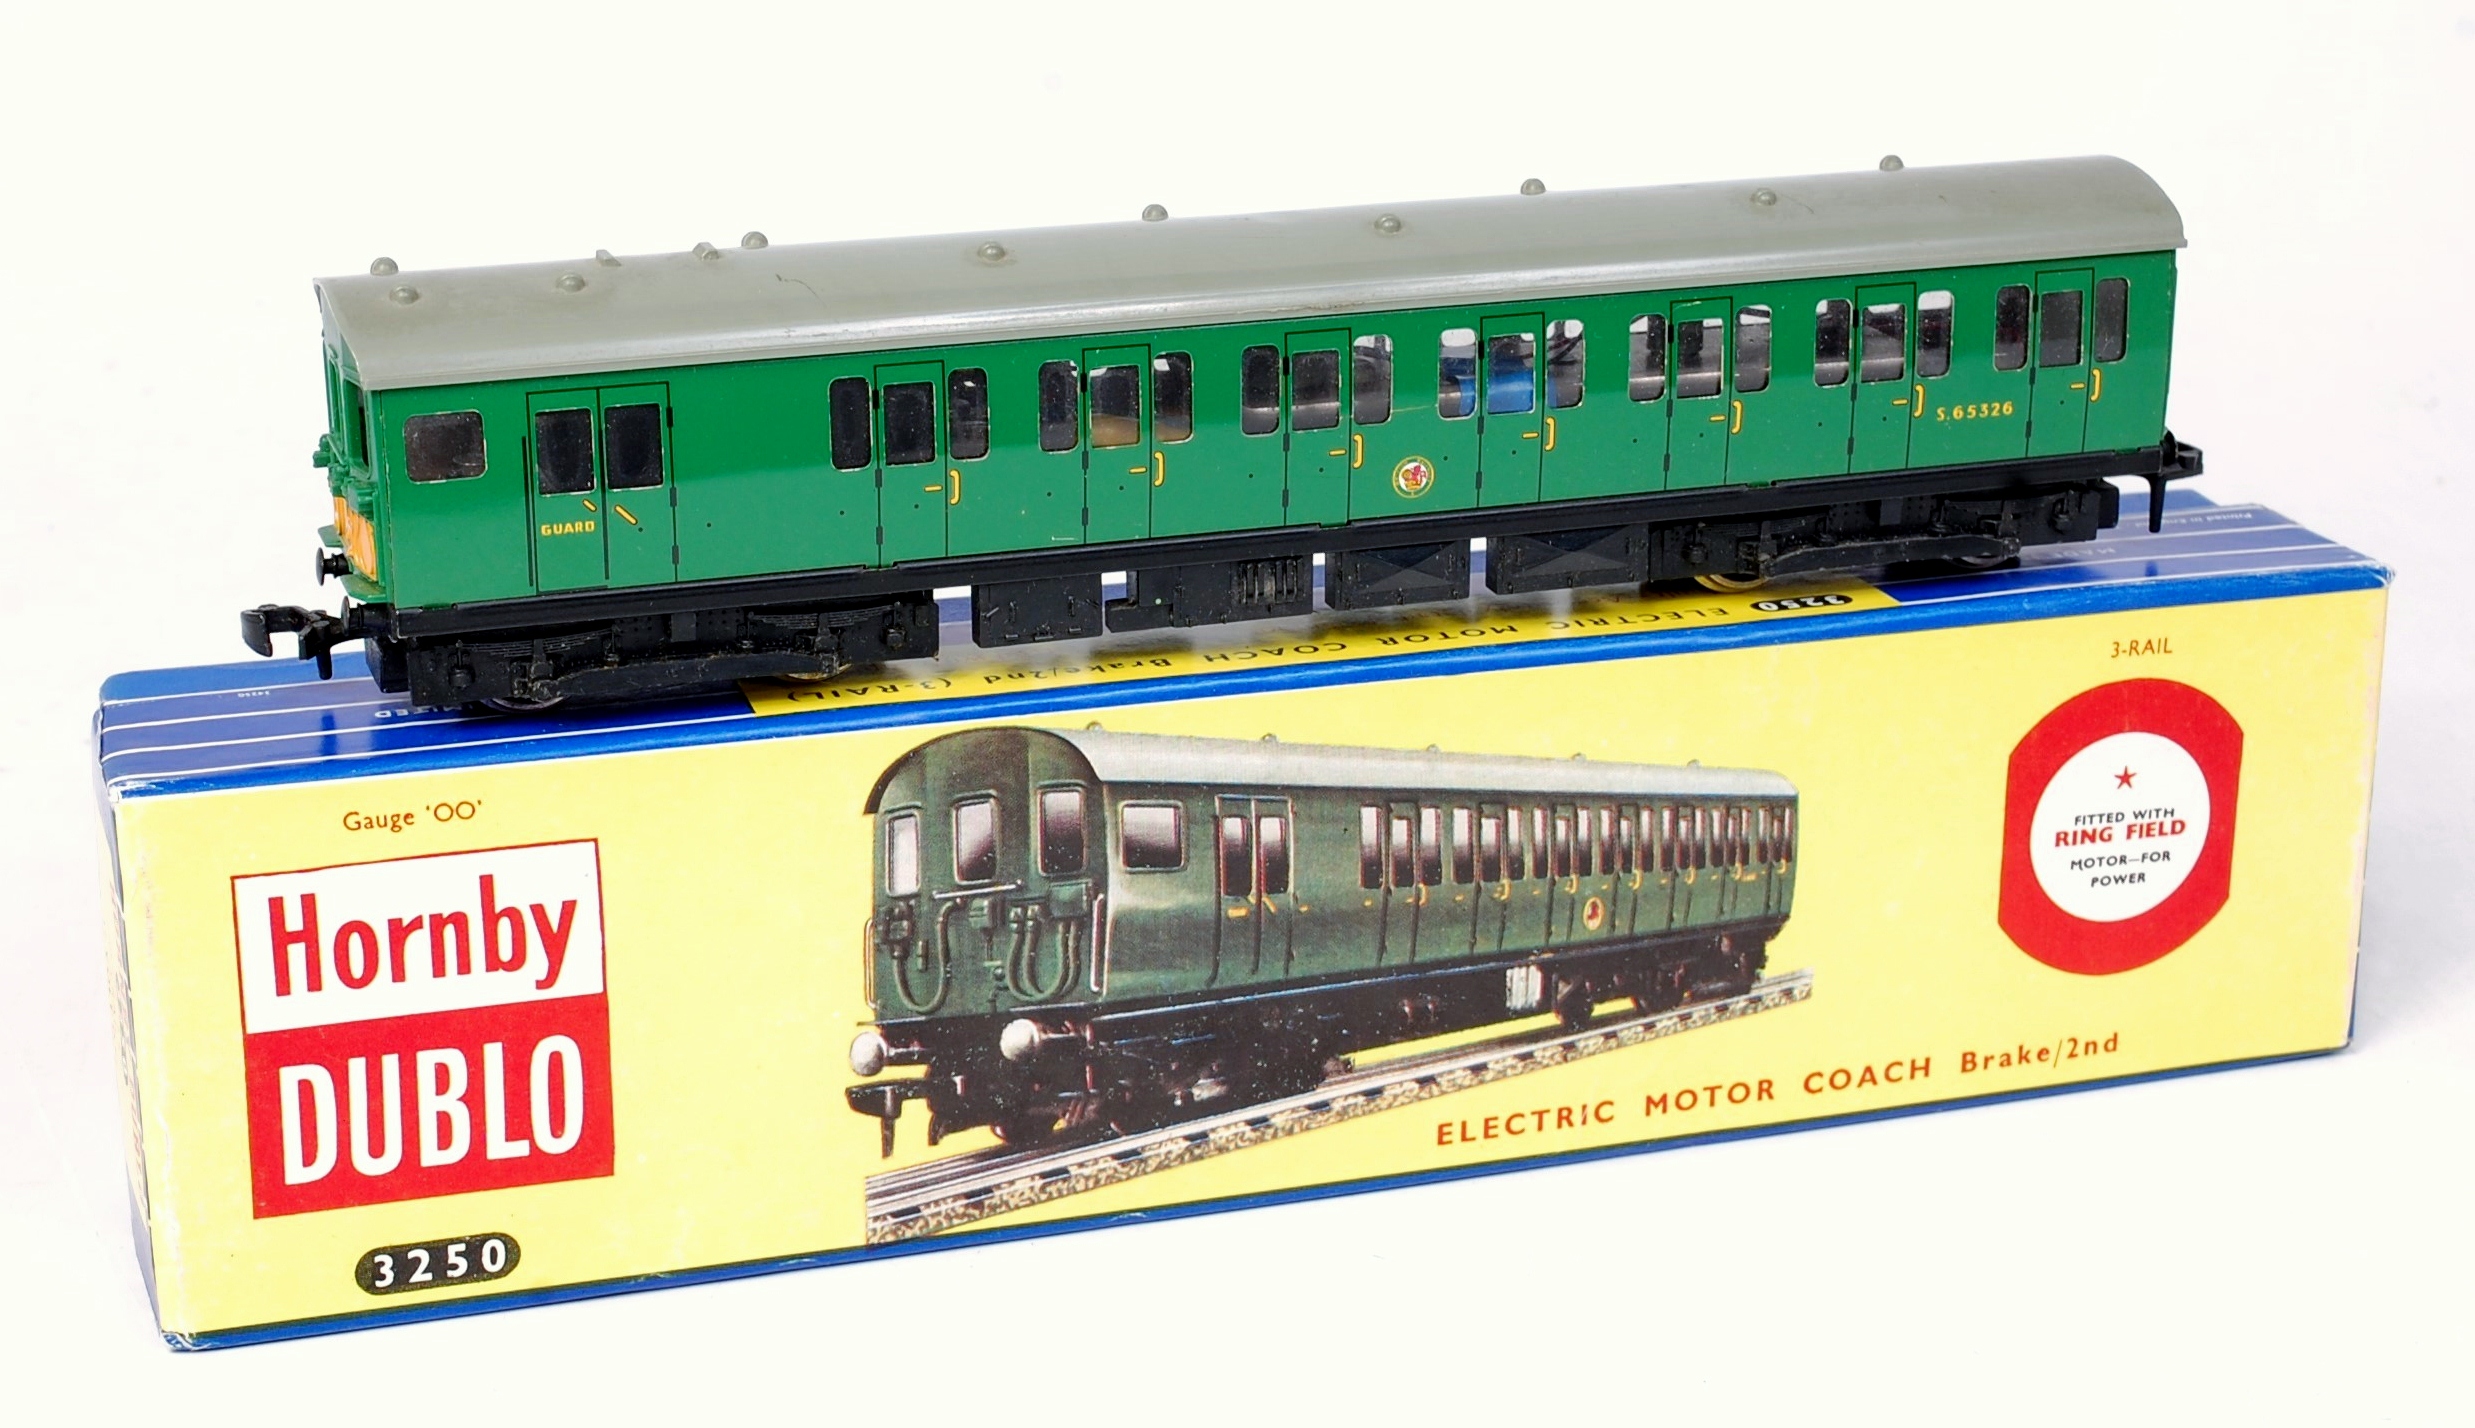 A Hornby Dublo 3-rail 3250 electric motor coach brake 2nd in Tony Cooper box,